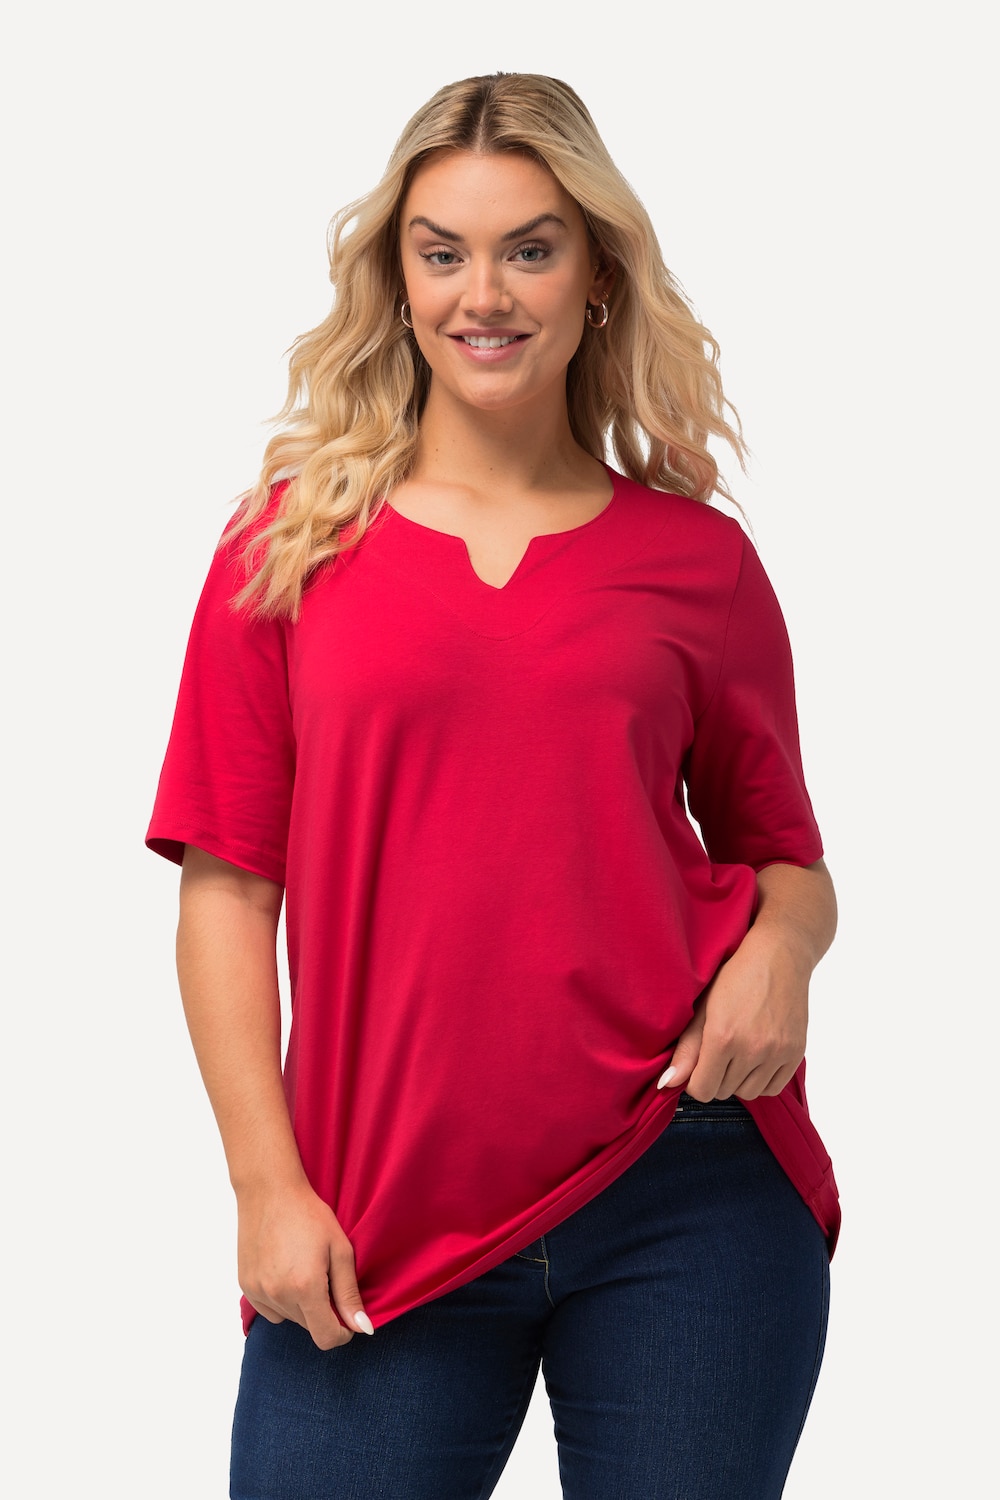 Große Größen T-Shirt, Damen, rot, Größe: 54/56, Baumwolle, Ulla Popken von Ulla Popken